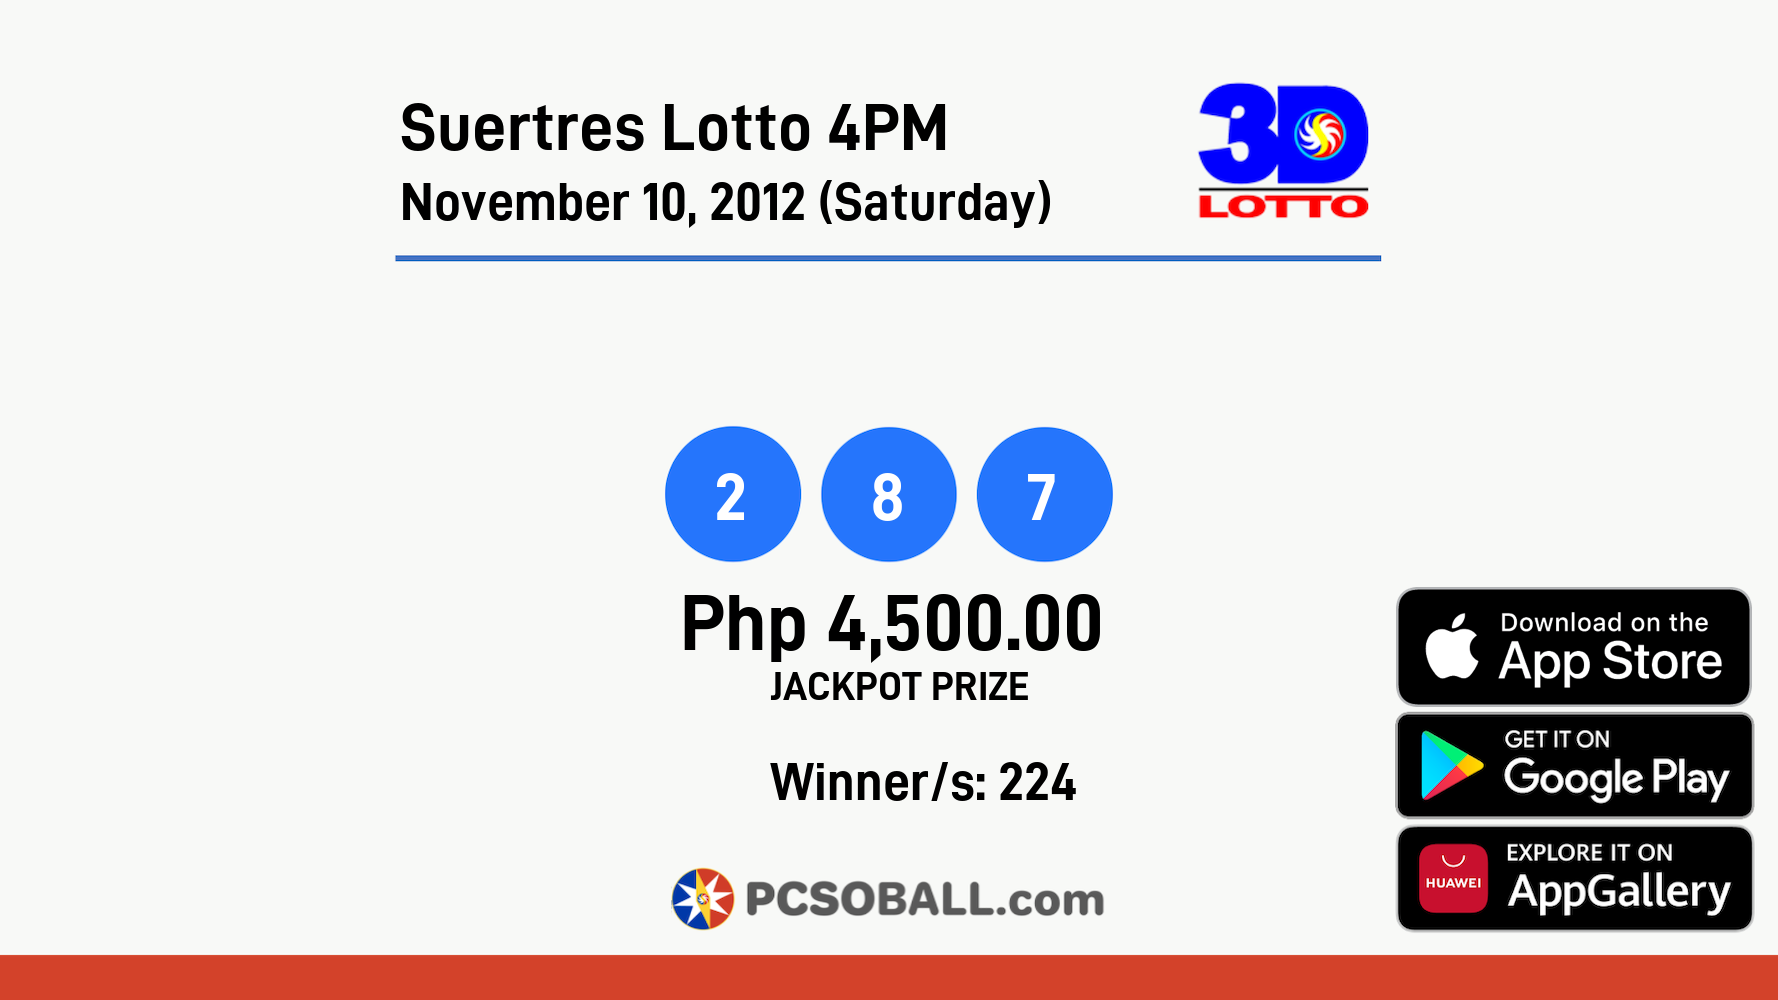 Suertres Lotto 4PM November 10, 2012 (Saturday) Result